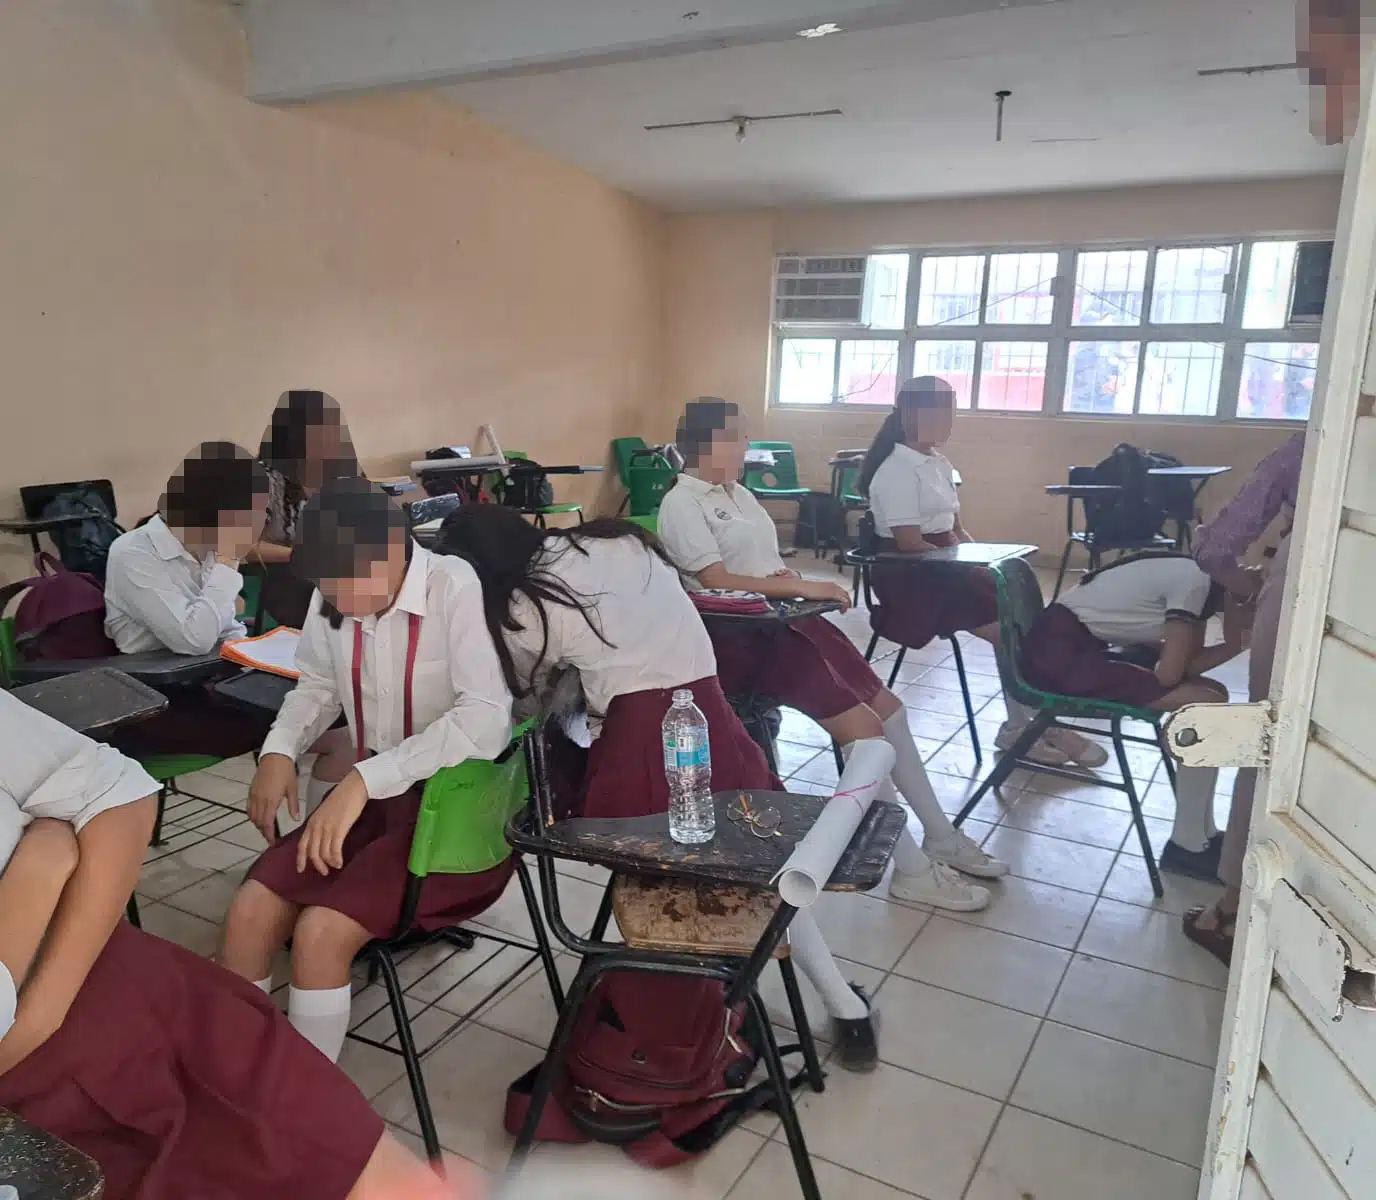 Estudiantes de secundaria tras afectaciones por las altas temperaturas en lunes cívico de Guasave